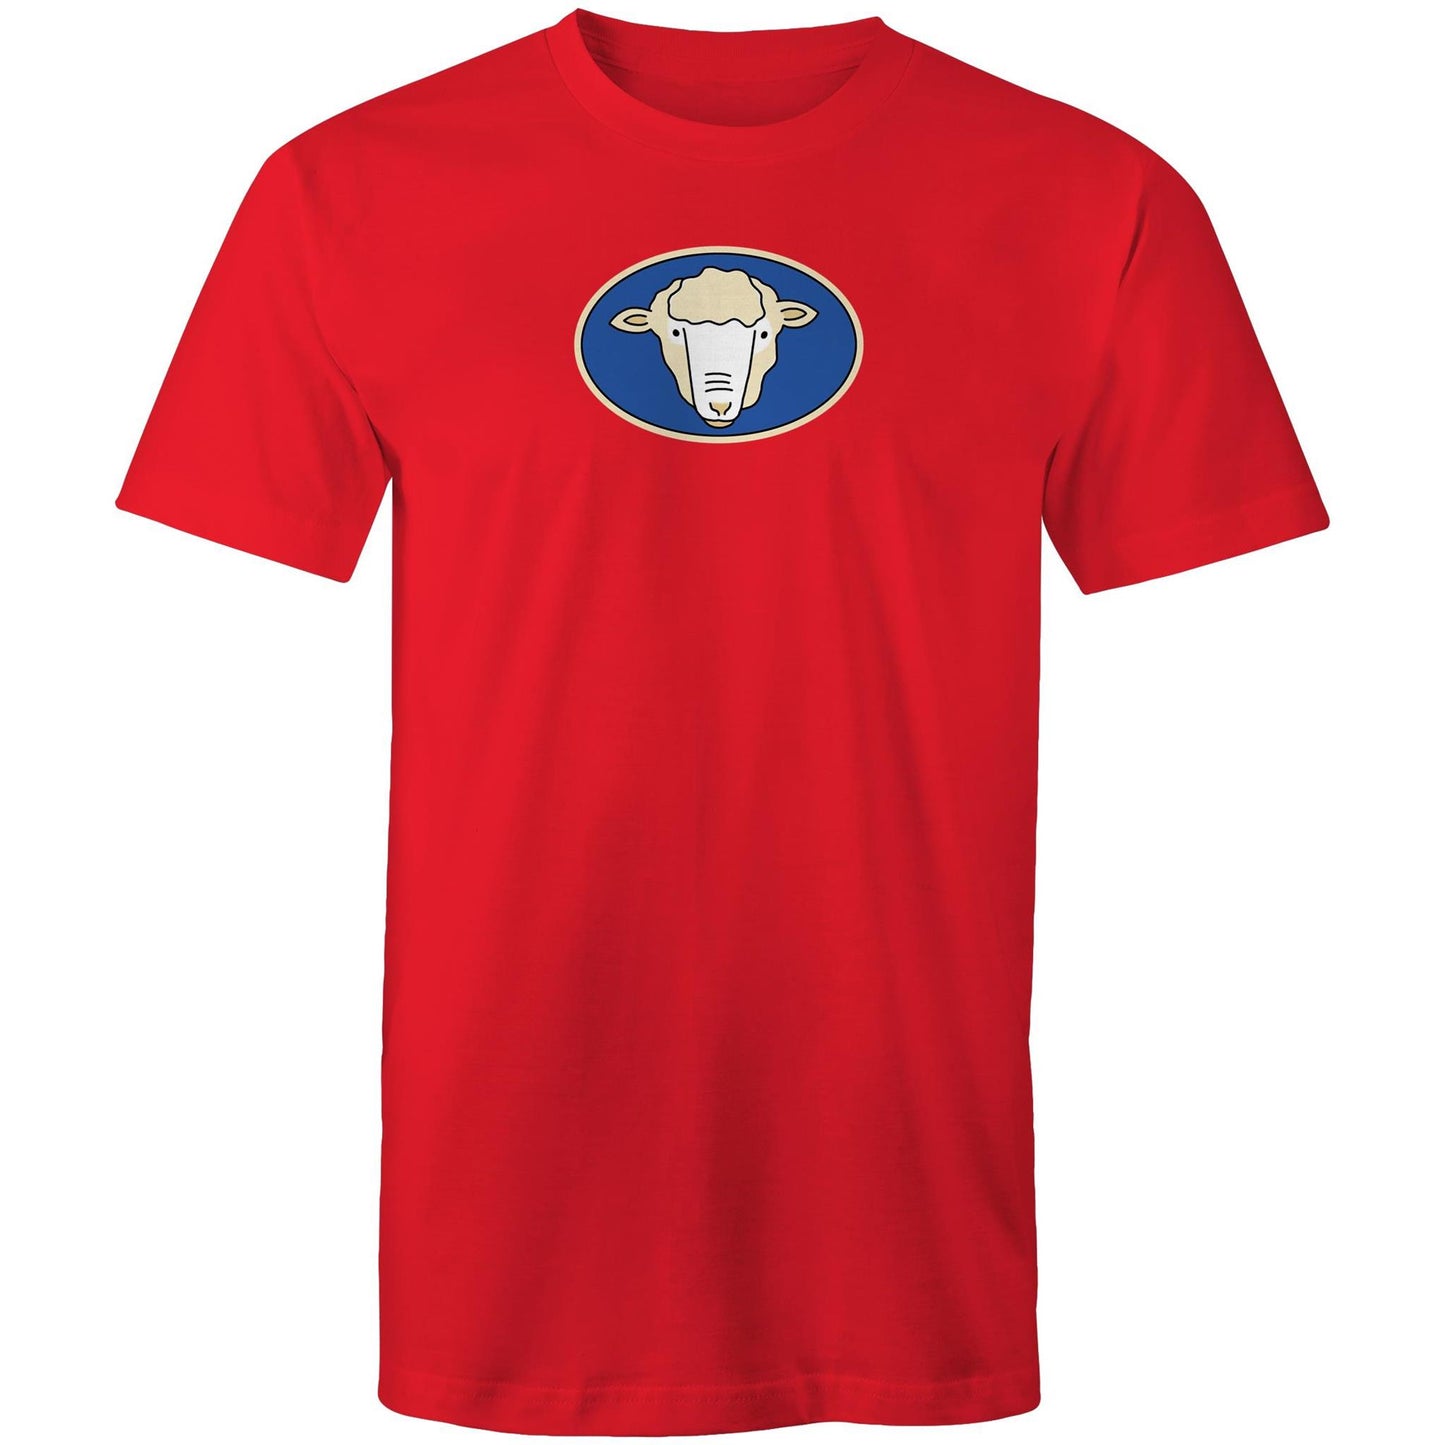 Butcher Shop Café T Shirts for Men (Unisex)